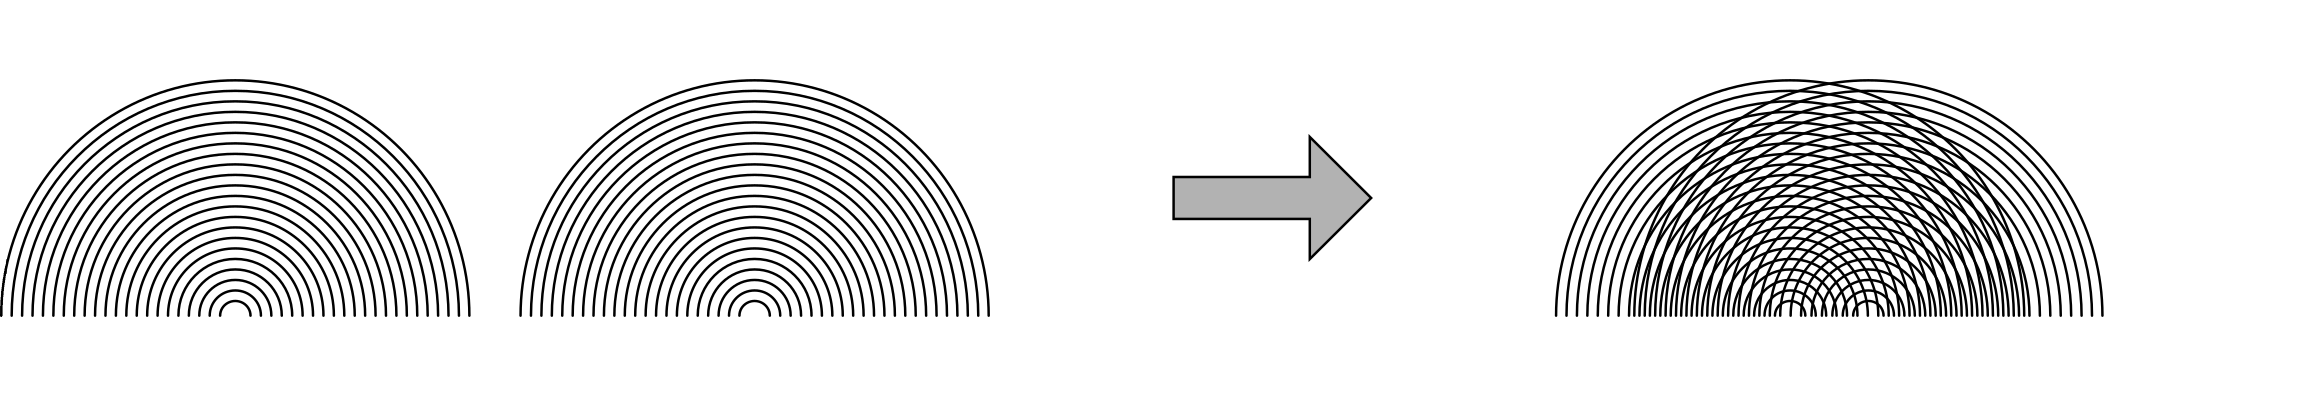 fig-interferenz-kreiswellen